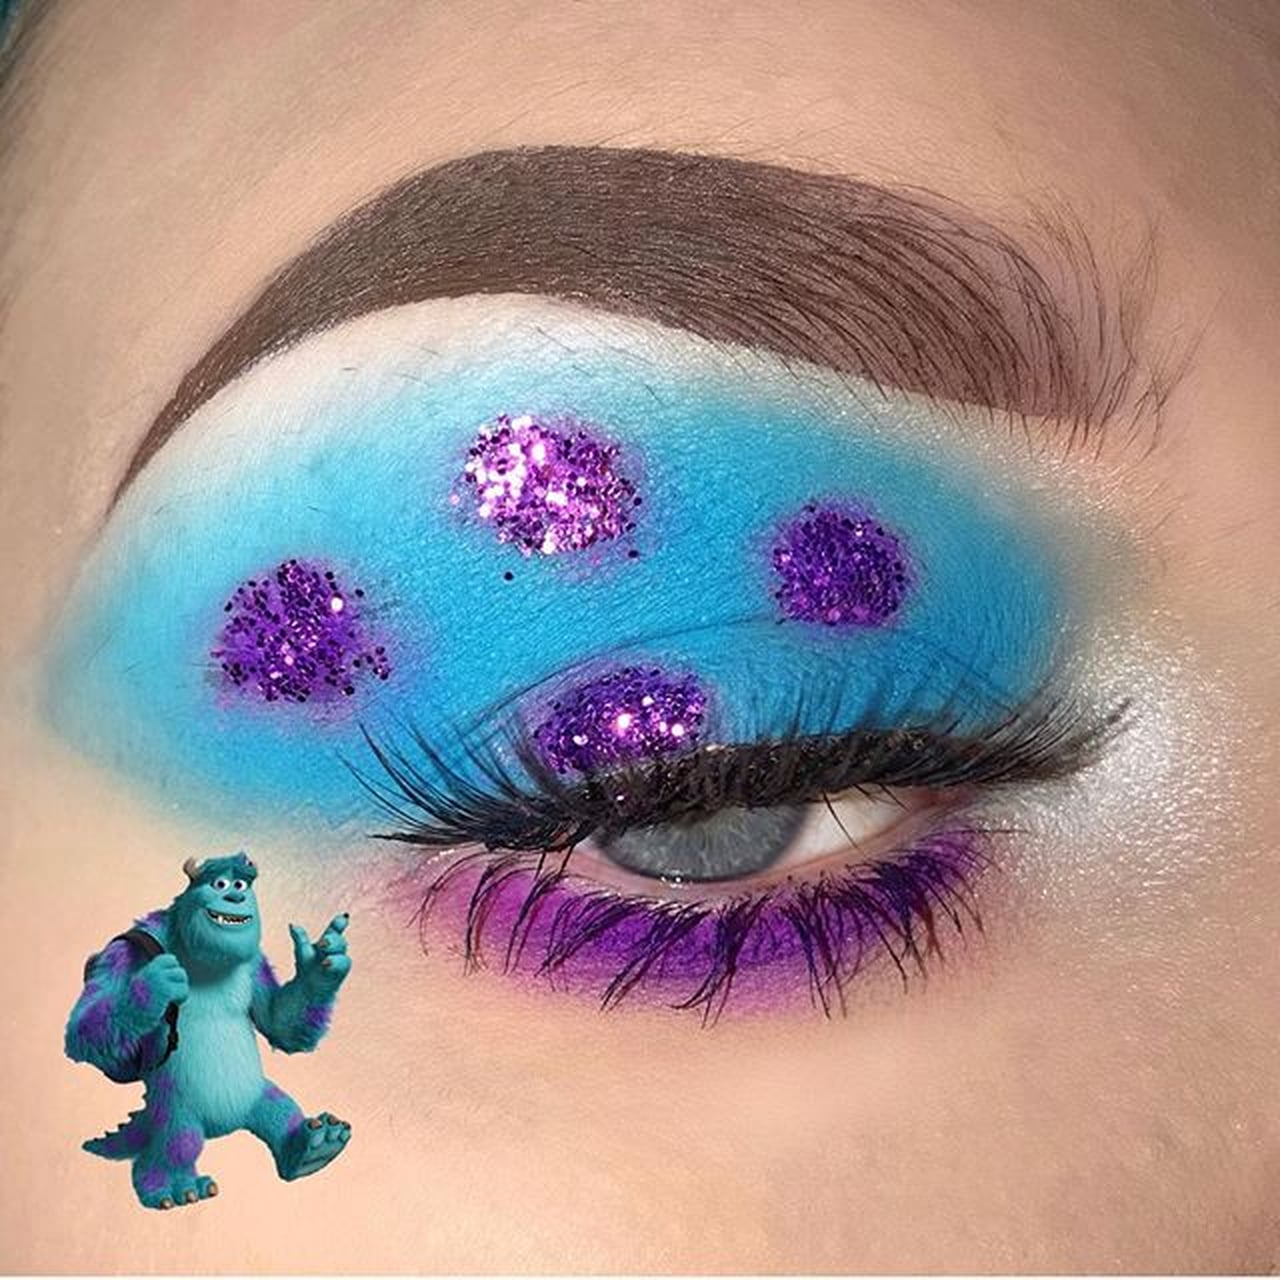 Disney Pixar-Inspired Eyeshadow Looks on Instagram | POPSUGAR Beauty